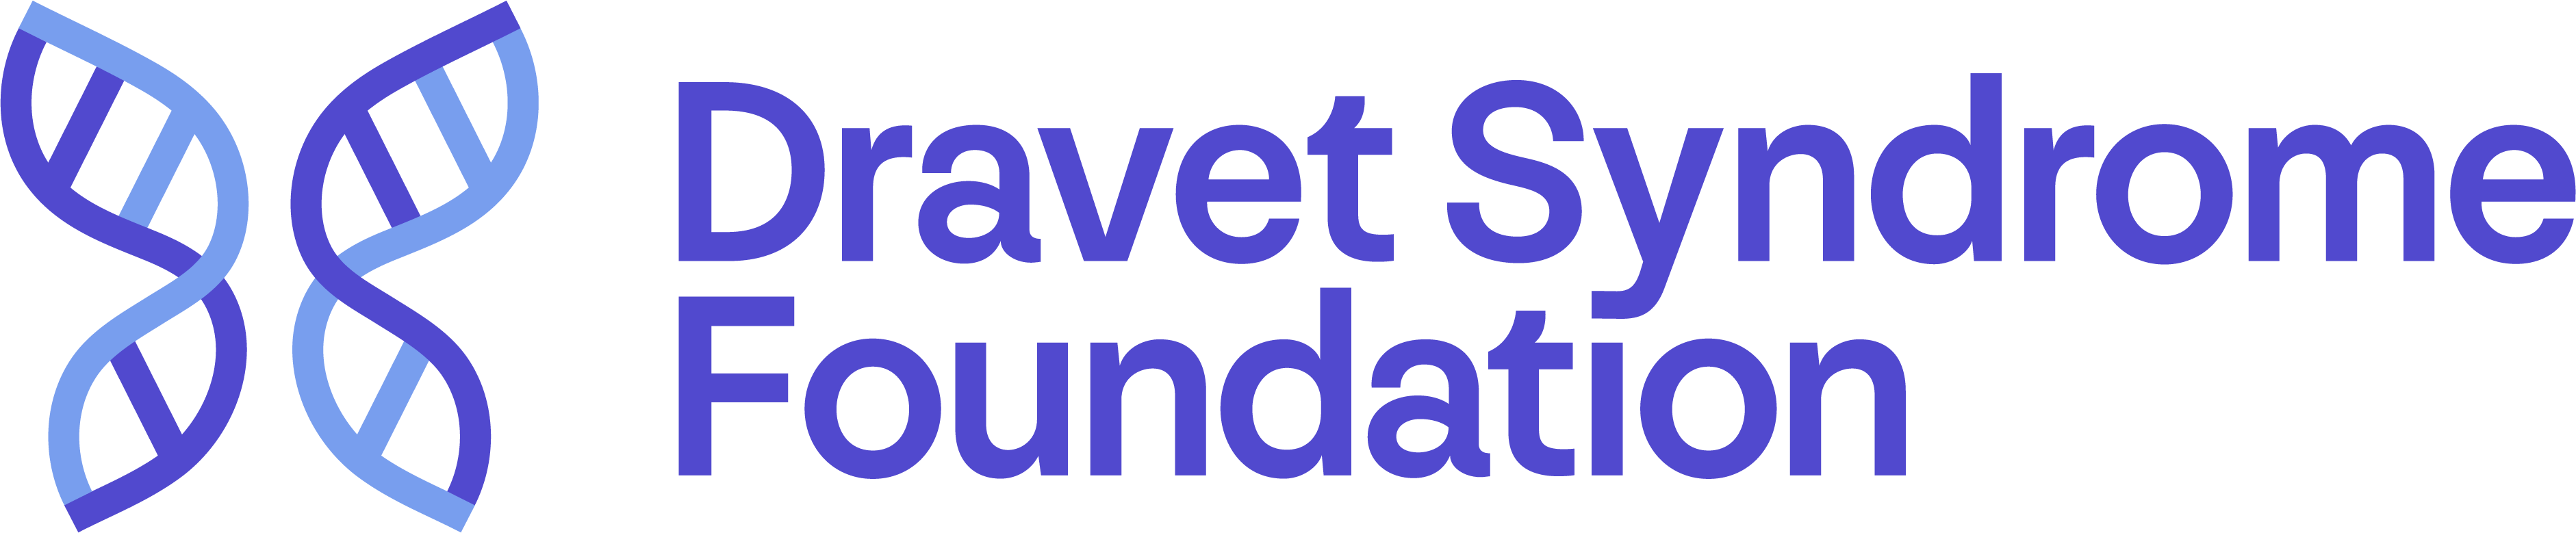 grid dravet_syndrome_foundation_logo.jpg